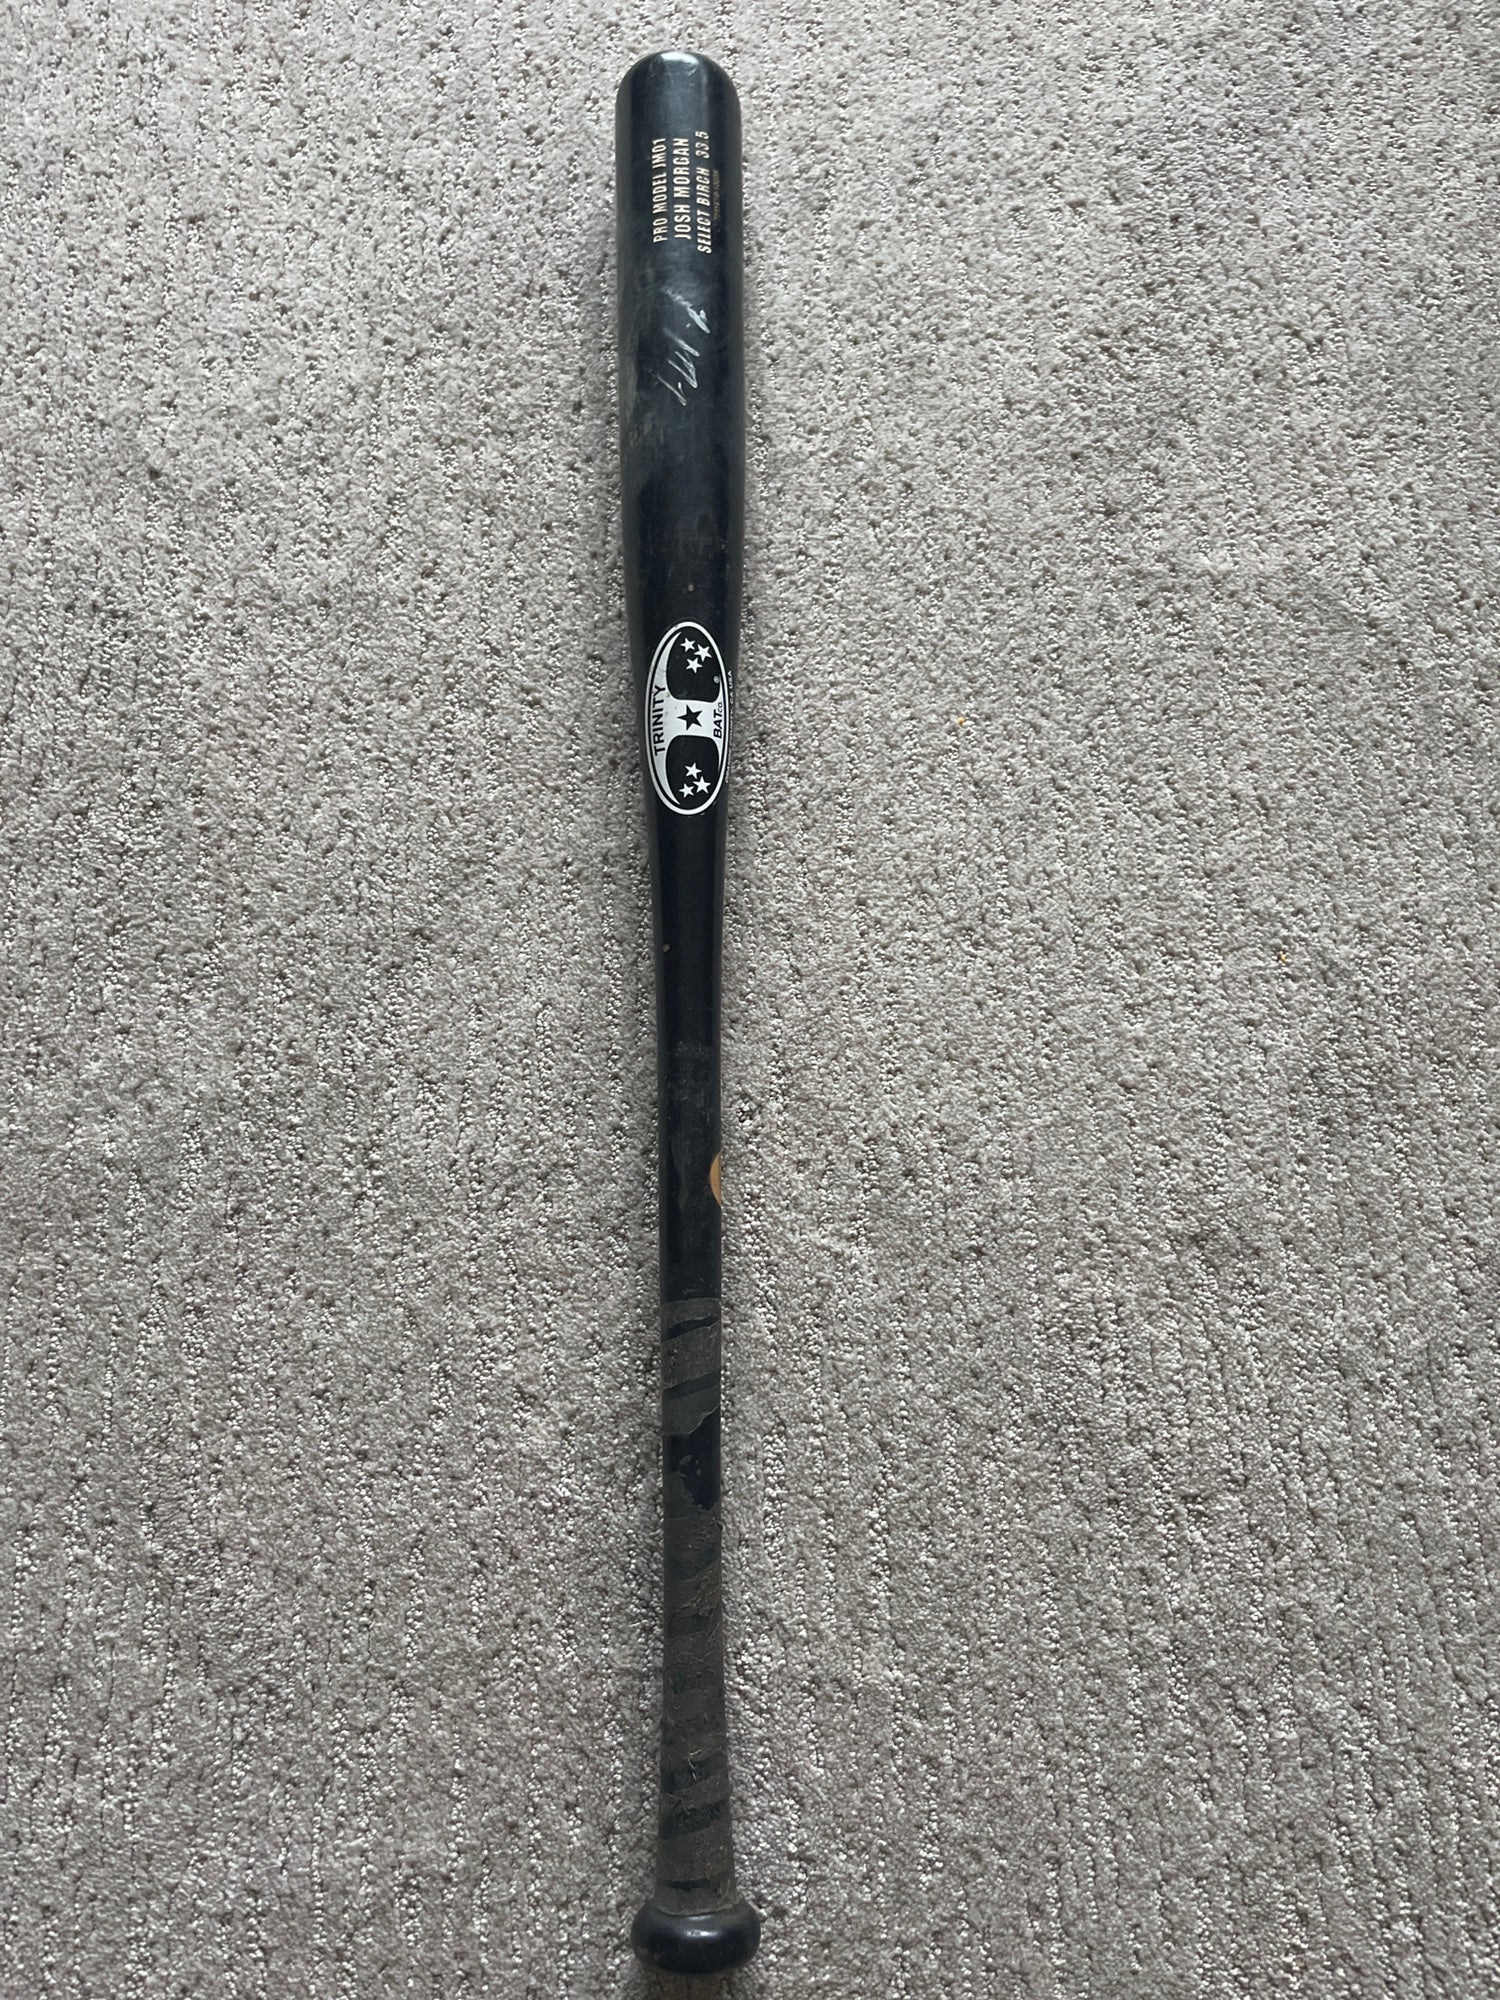 Used Trinity Bat Co. Pro issued wood bat 33.5” 30.5 oz